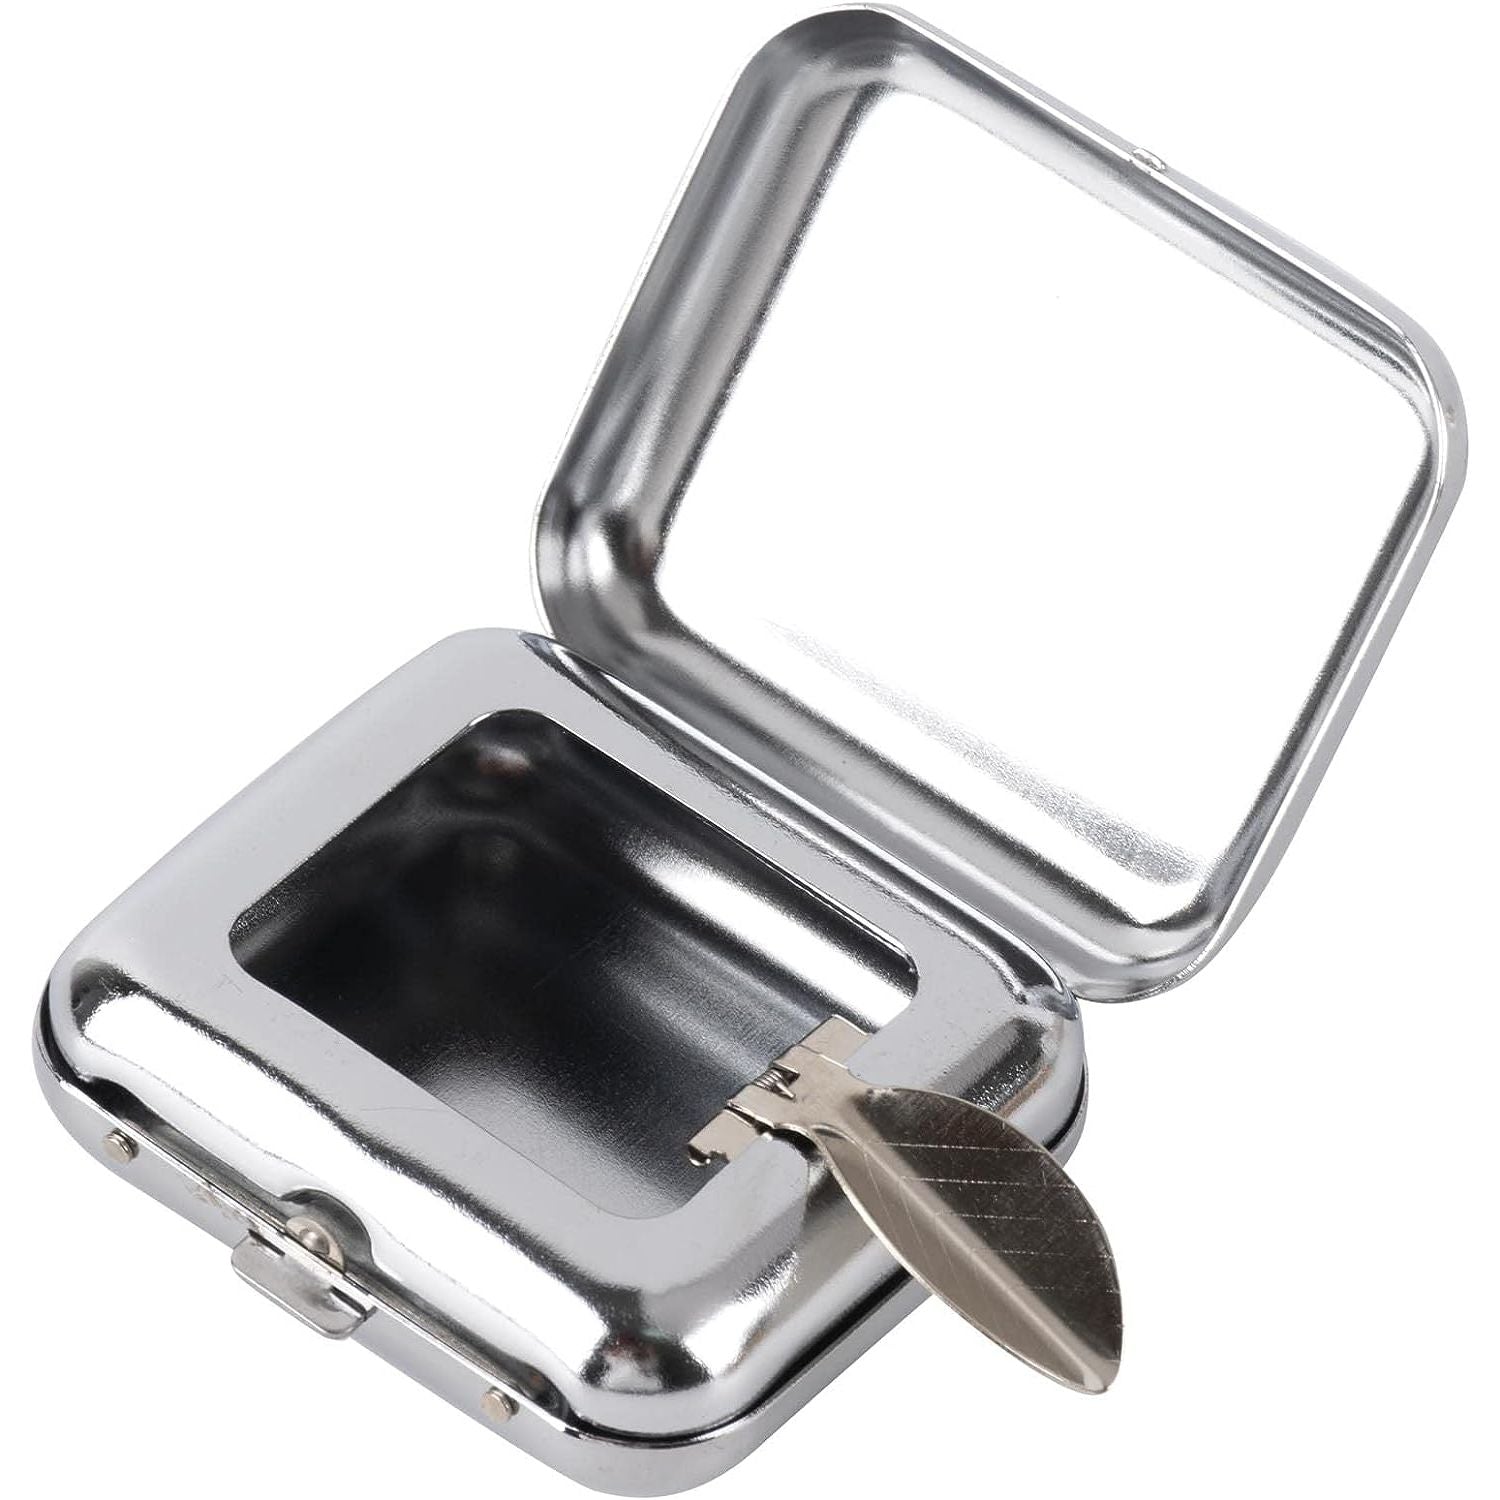 Draagbare Mini Metalen Zakasbak - Pocket Asbak - Afneembare Vierkante Asbak met Deksel voor Onderweg - Geschikt voor Buitenreizen en Zakelijk Gebruik - Zilver